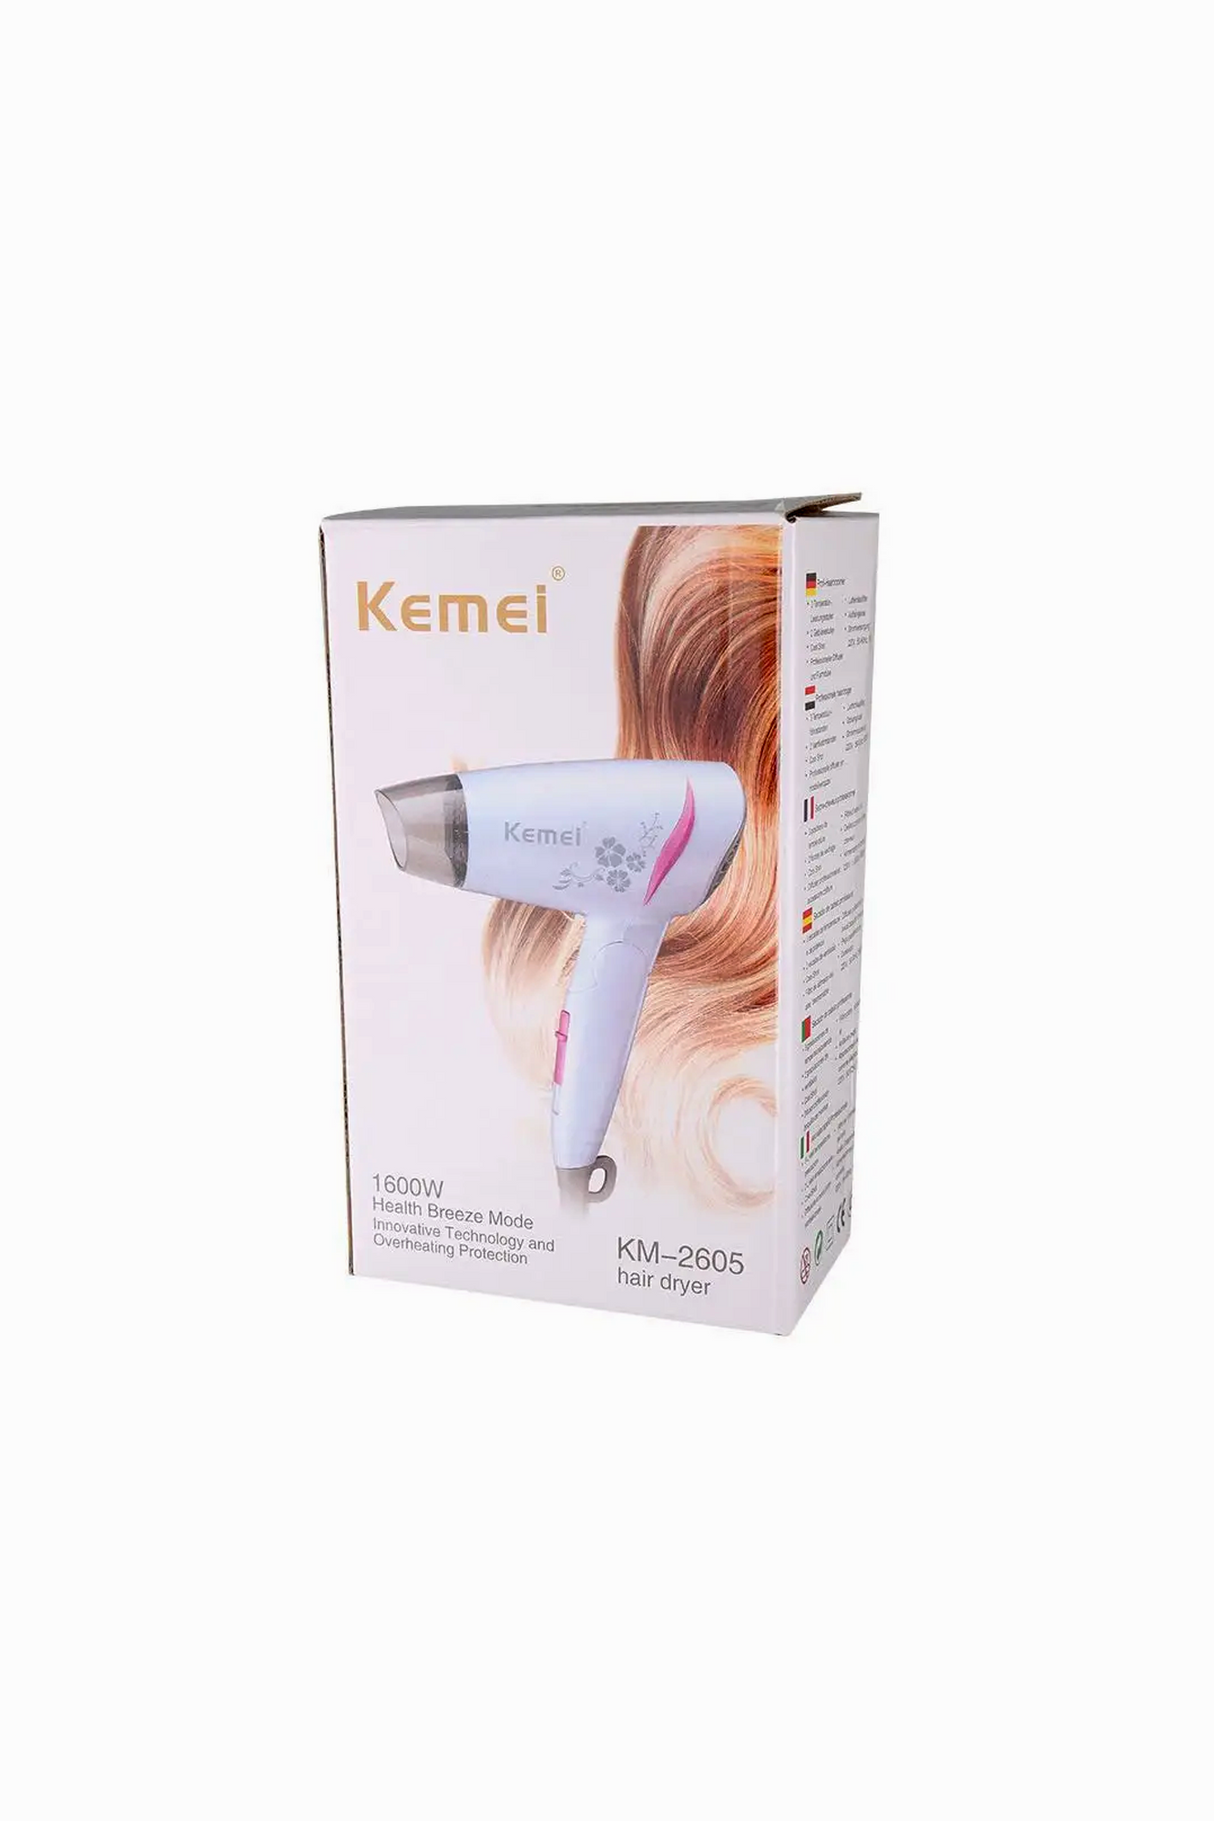 kemei hair dryer km-2605